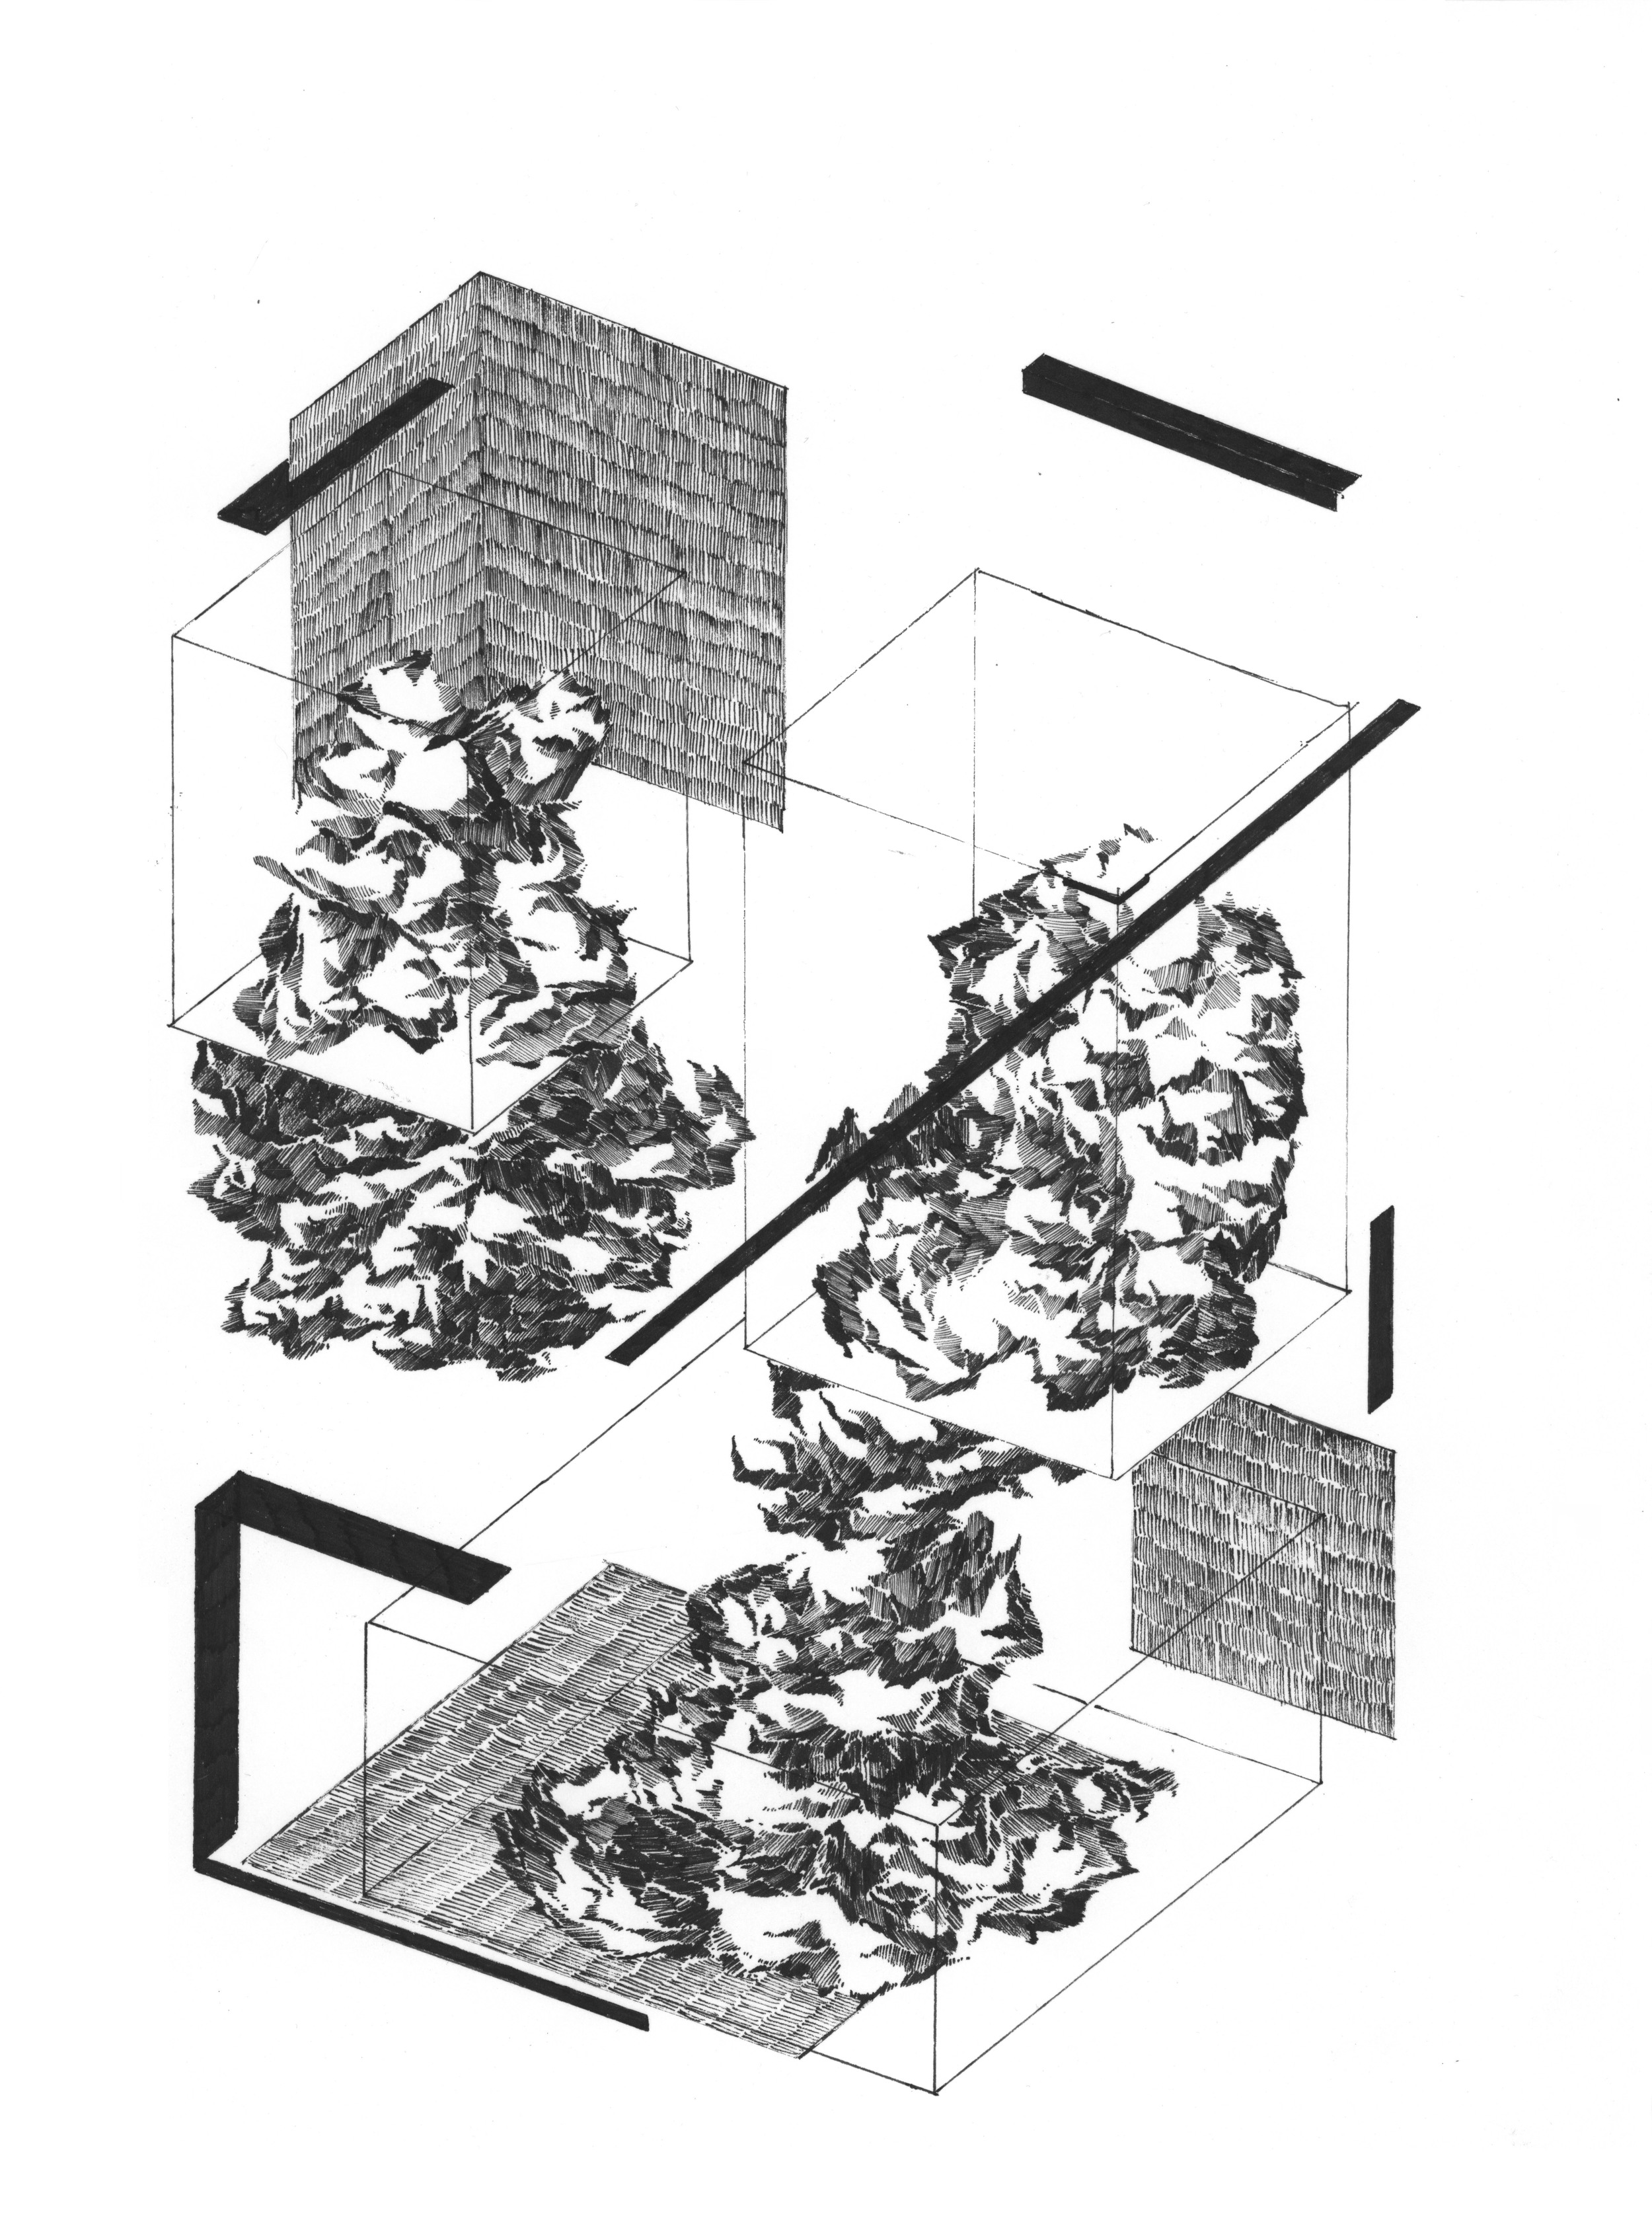  "Axonometric Composition", 2014, Pen on Paper, 15" x 11"&nbsp; 